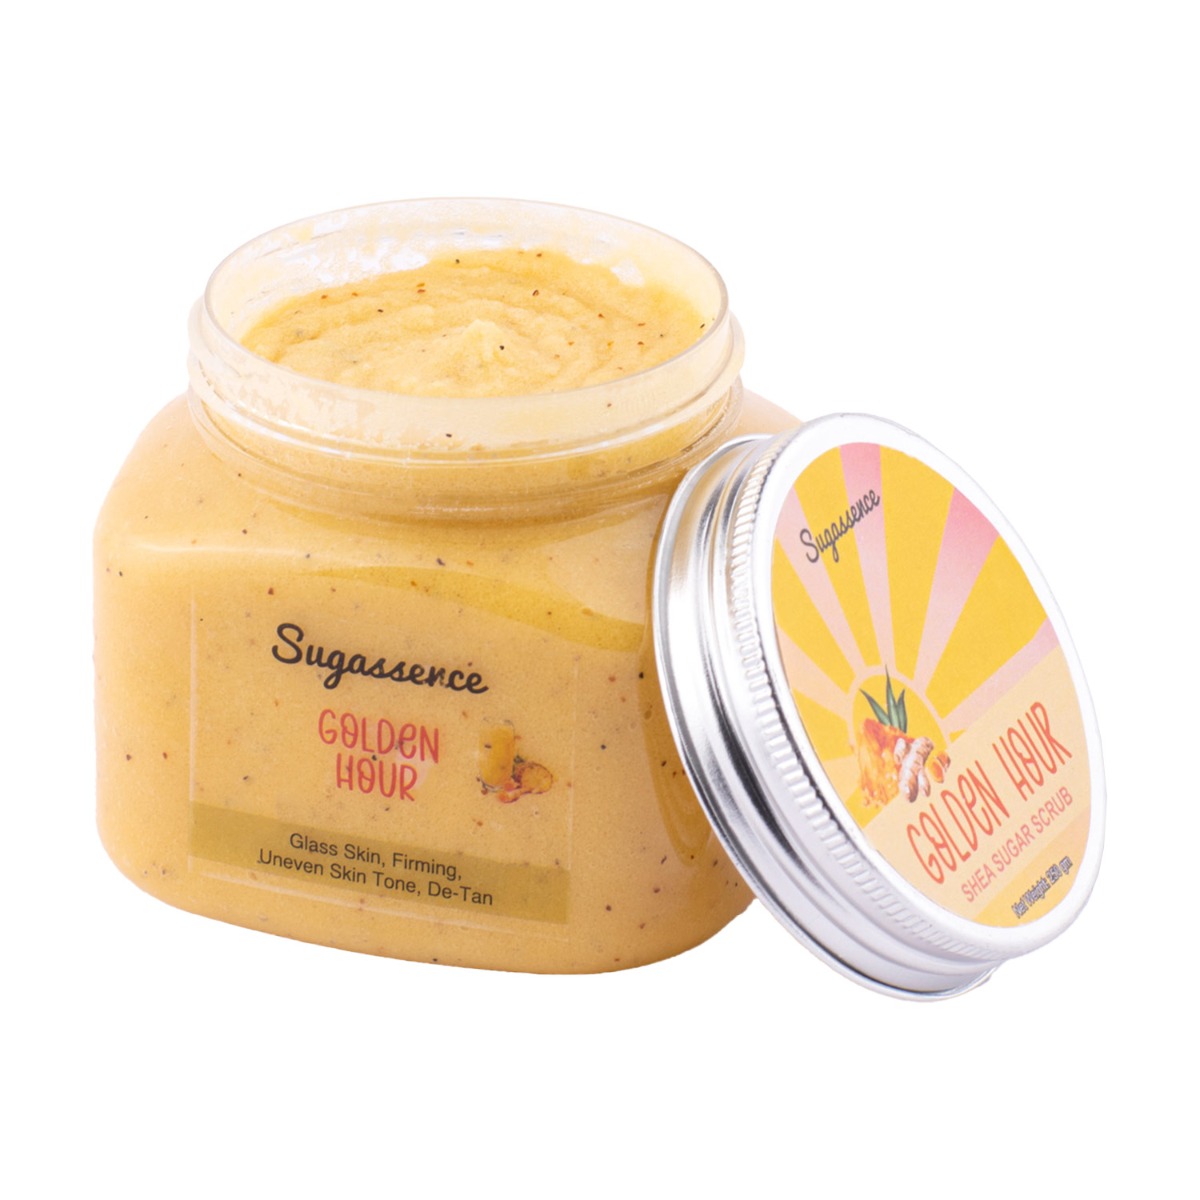 Sugassence Golden Hour - Shea Sugar Scrub - De-Tan, Firming, Boost Collagen Production, Anti Aging